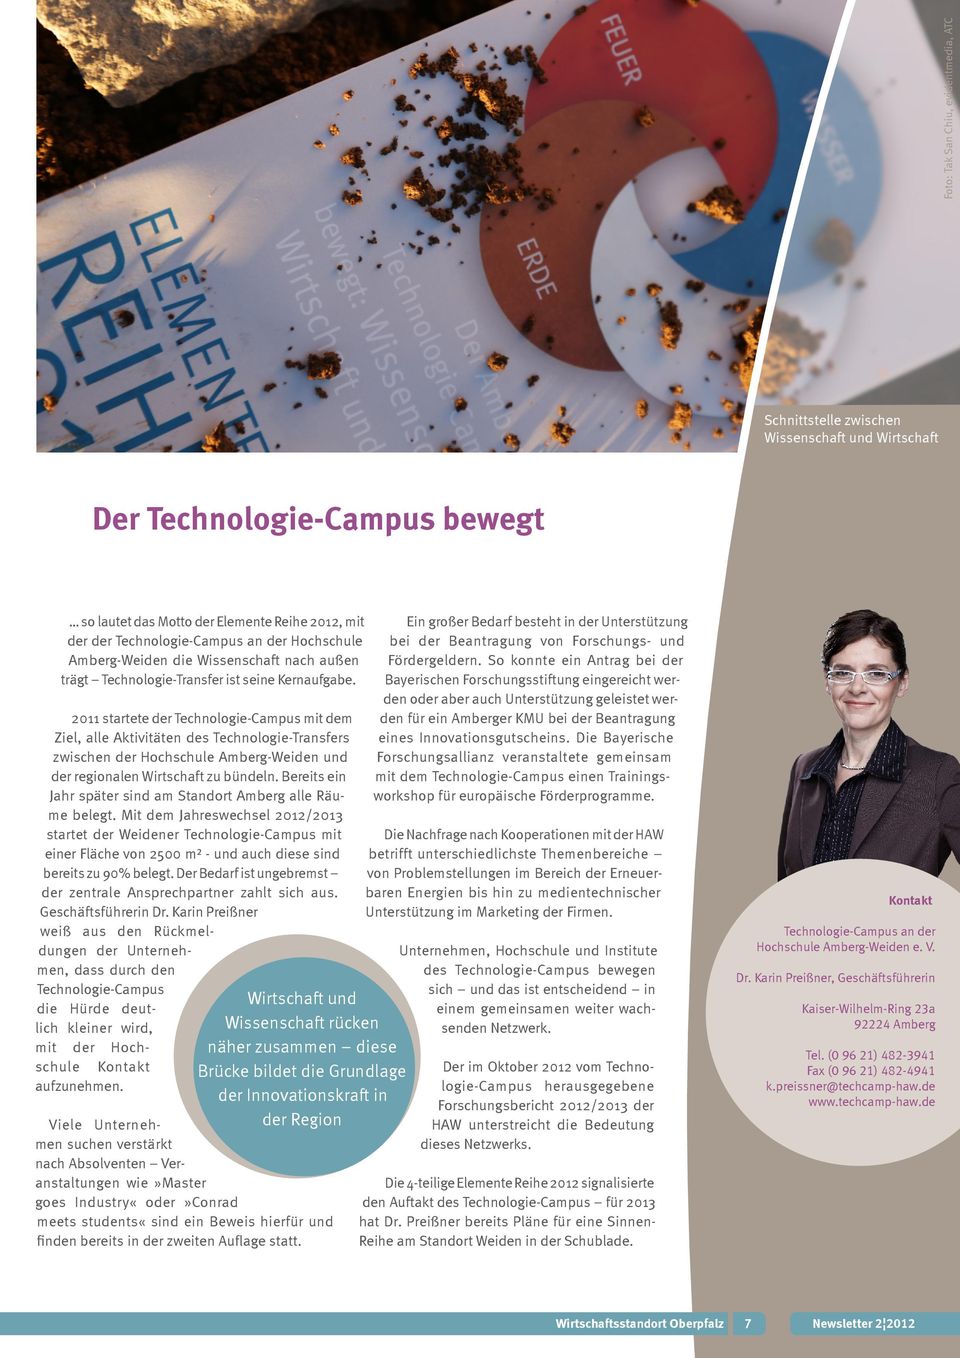 2011 startete der Technologie-Campus mit dem Ziel, alle Aktivitäten des Technologie-Transfers zwischen der Hochschule Amberg-Weiden und der regionalen Wirtschaft zu bündeln.